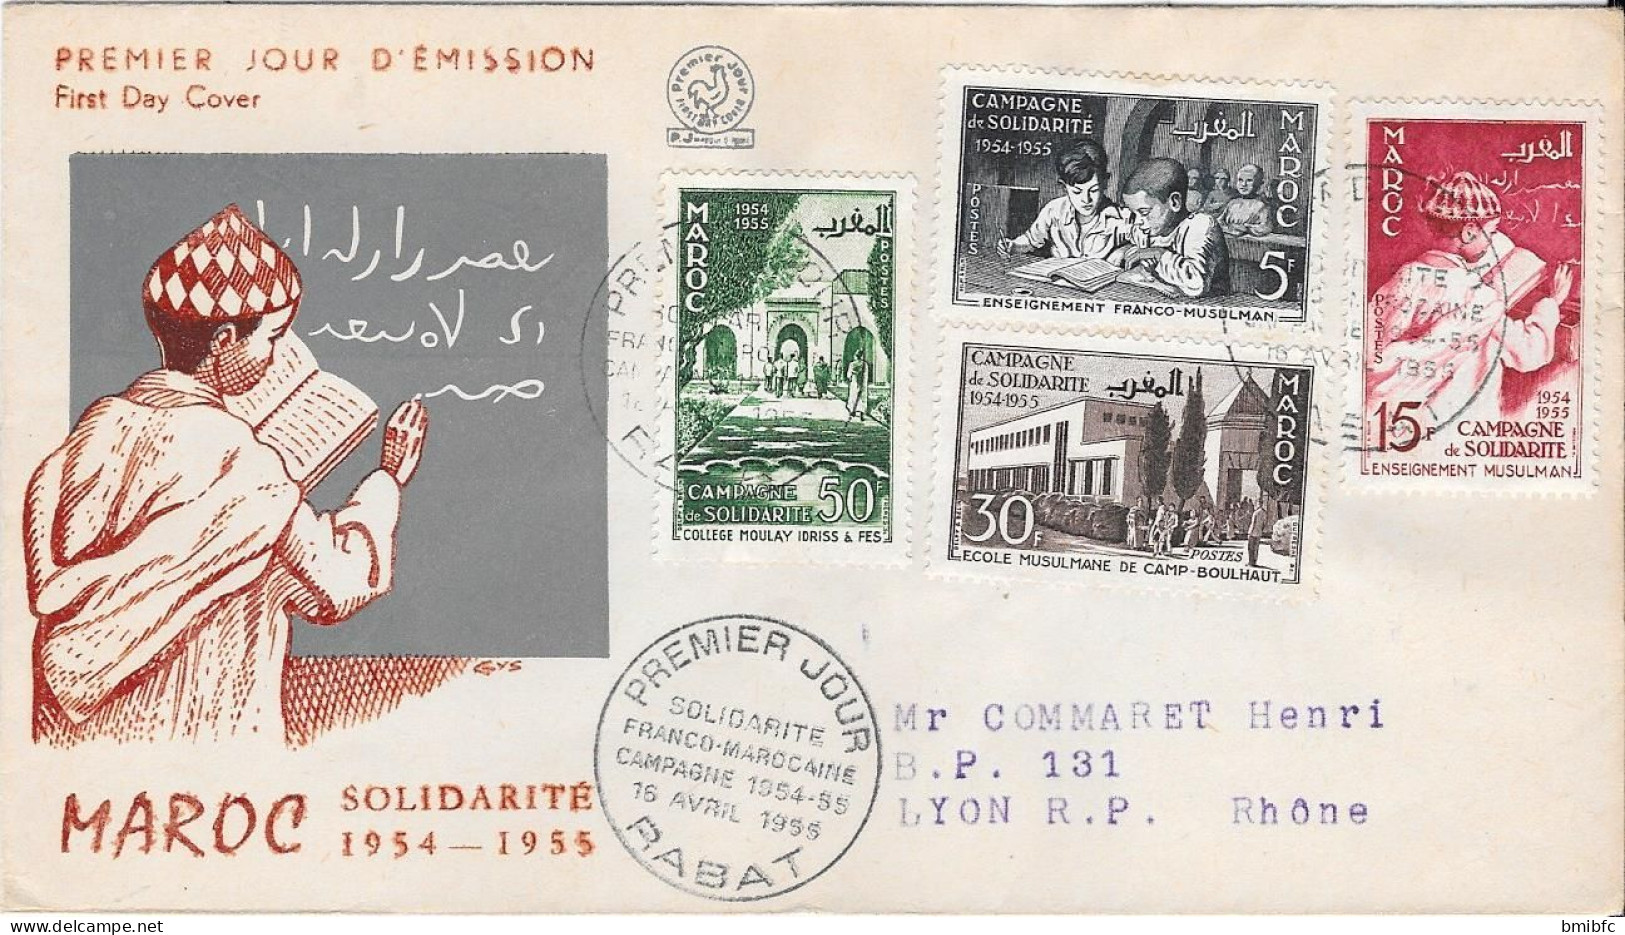 MAROC SOLIDARITÉ 1954-1955 - Marocco (1956-...)